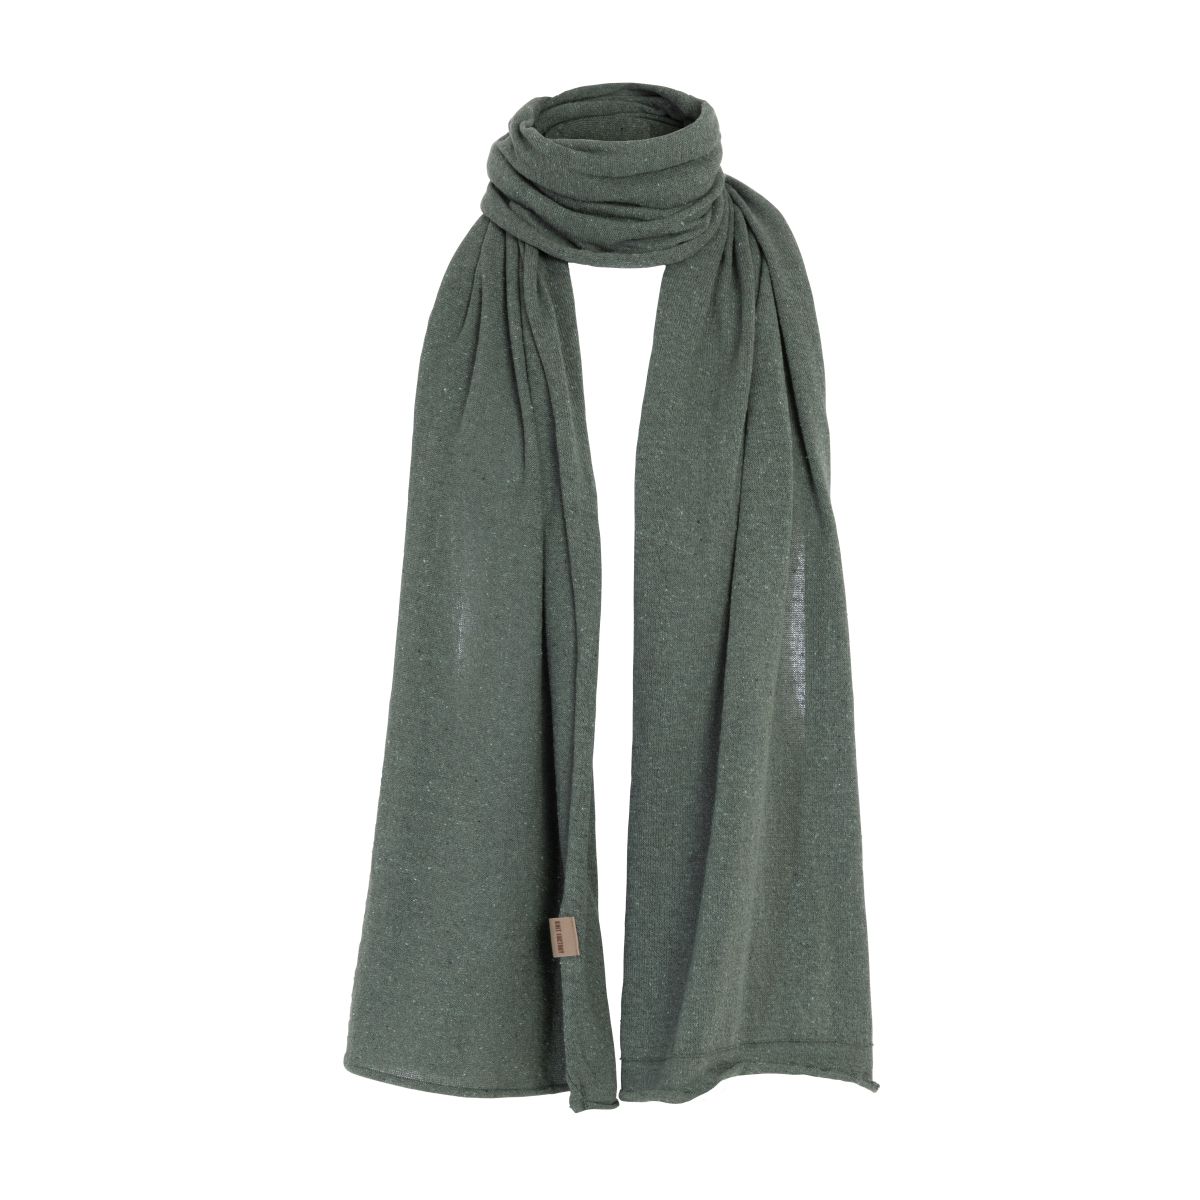 iris scarf laurel